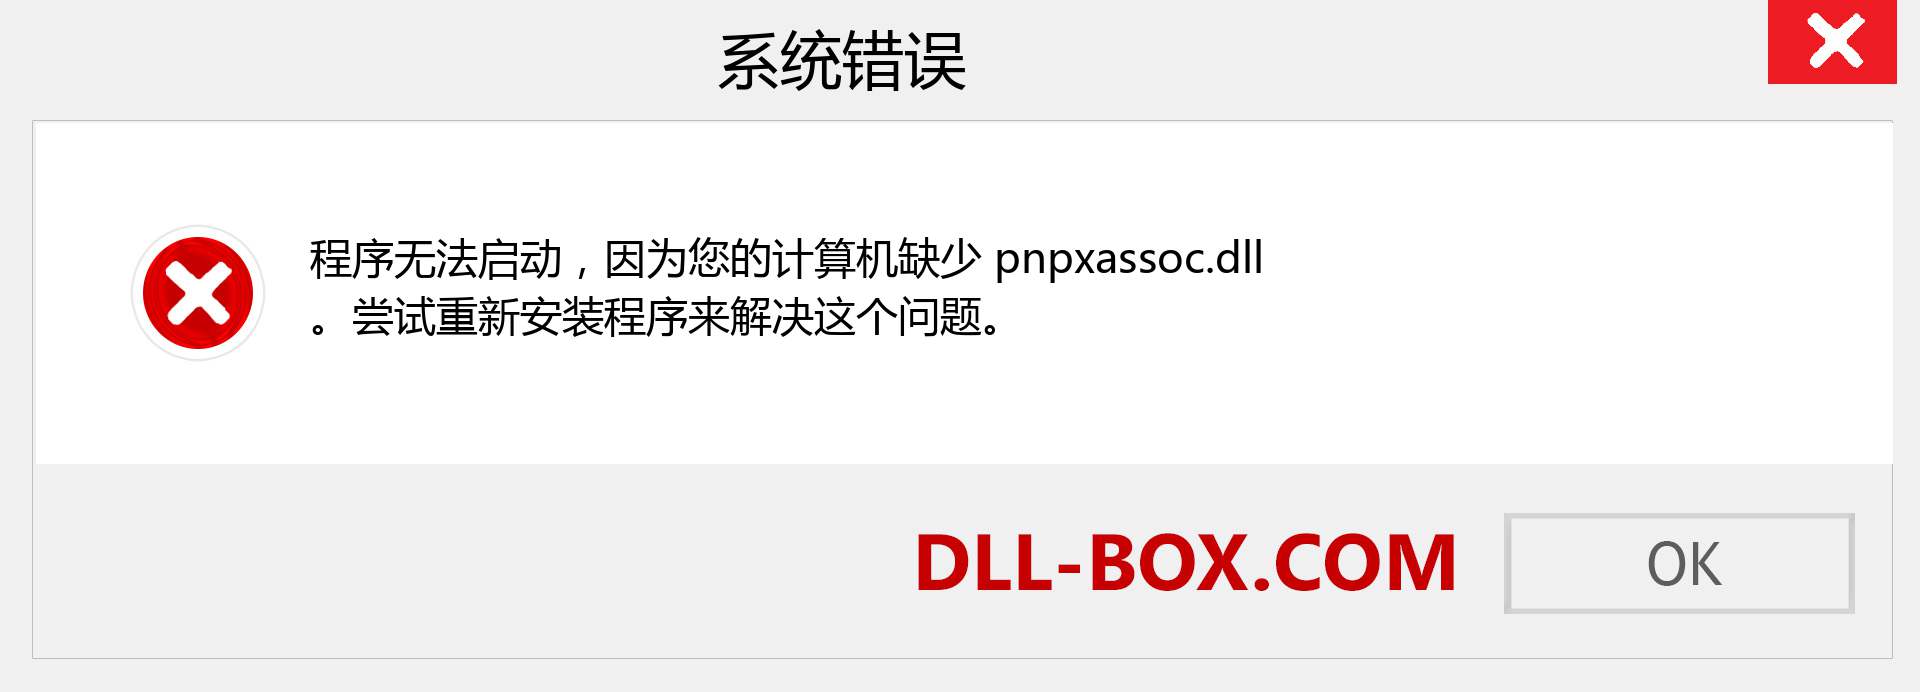 pnpxassoc.dll 文件丢失？。 适用于 Windows 7、8、10 的下载 - 修复 Windows、照片、图像上的 pnpxassoc dll 丢失错误